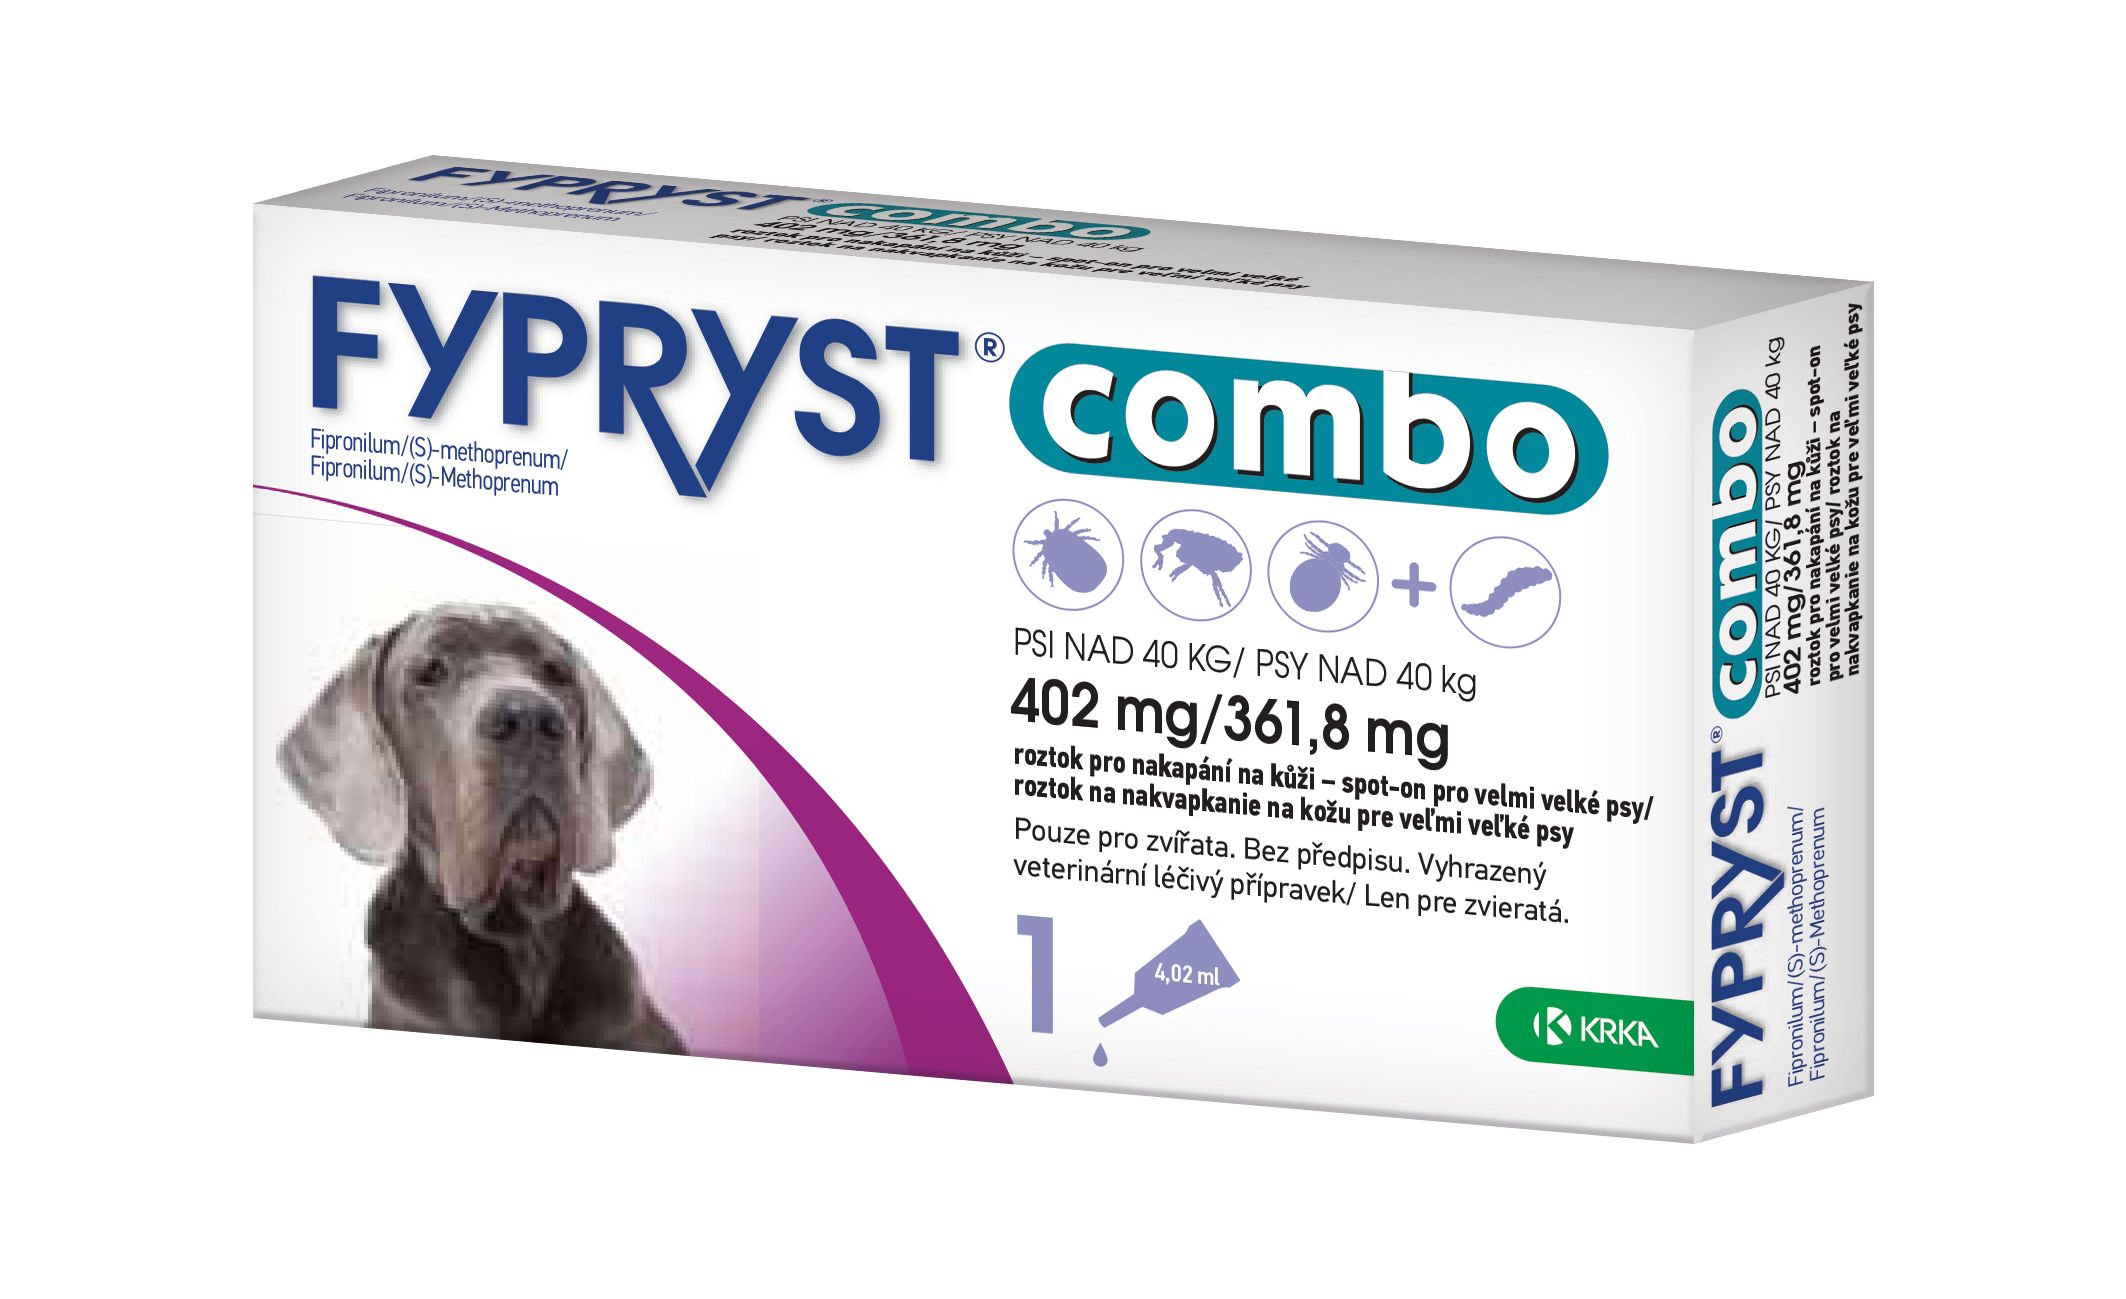 Fypryst Combo spot-on pro velmi velké psy nad 40 kg 402 mg/361